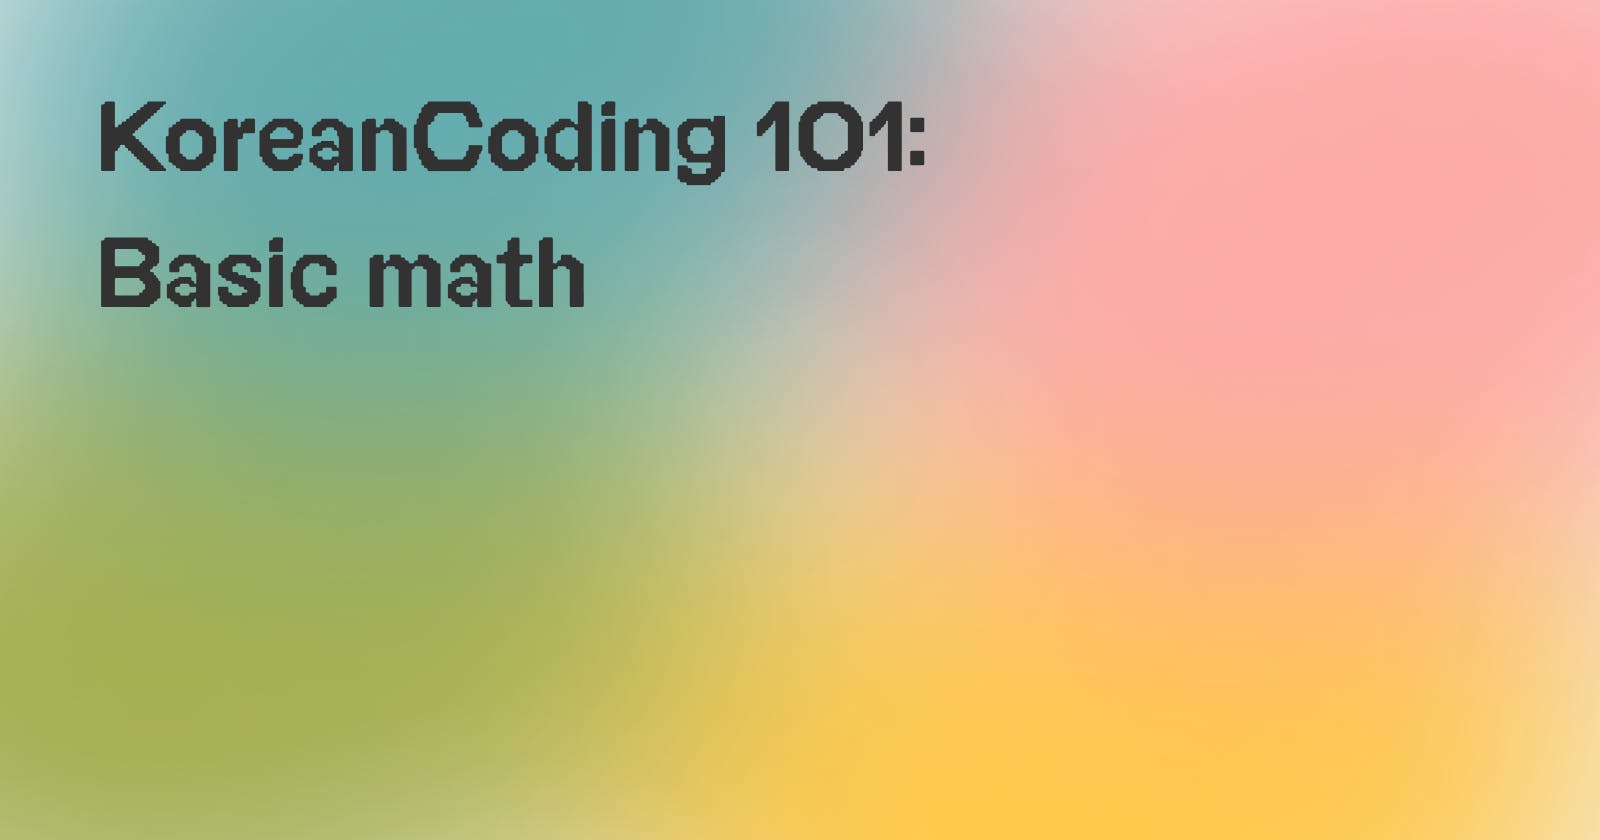 1-koreancoding-101-basic-math